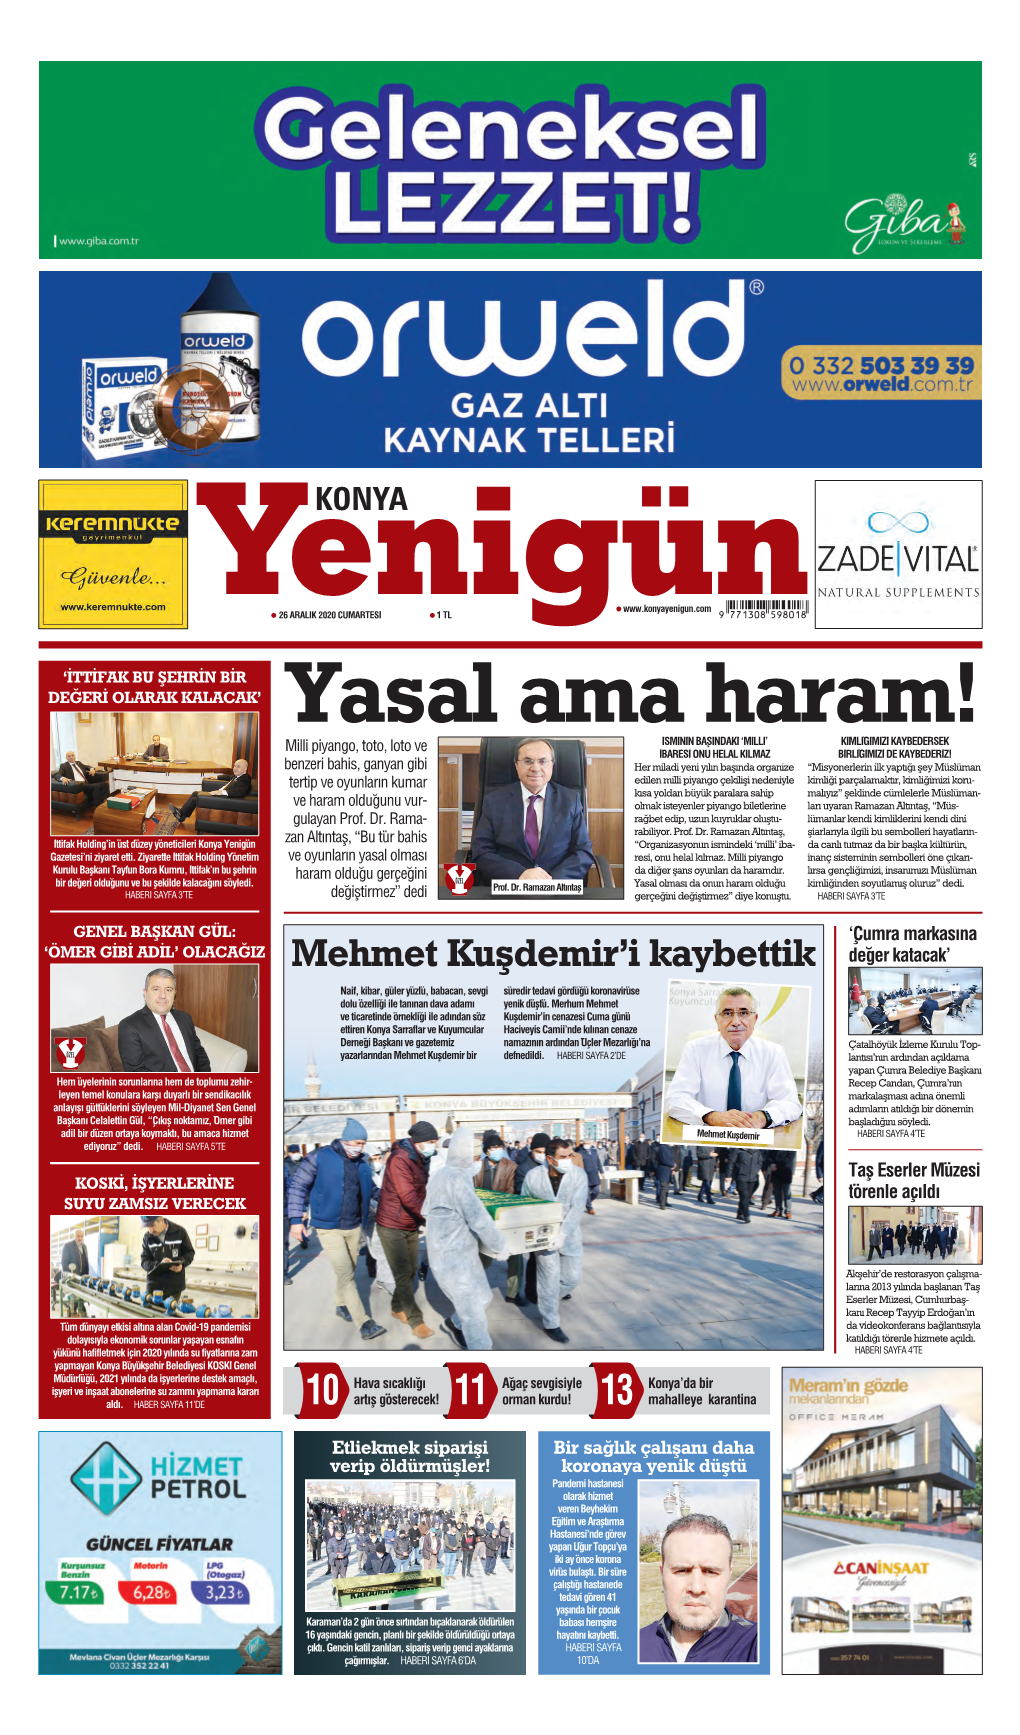 Konya Yenigün Gazetesi Ve Bu Şehrin Bir Değeriyiz” Ifadele- Yönetim Kurulu Başkanı Mustafa Rini Kullandı